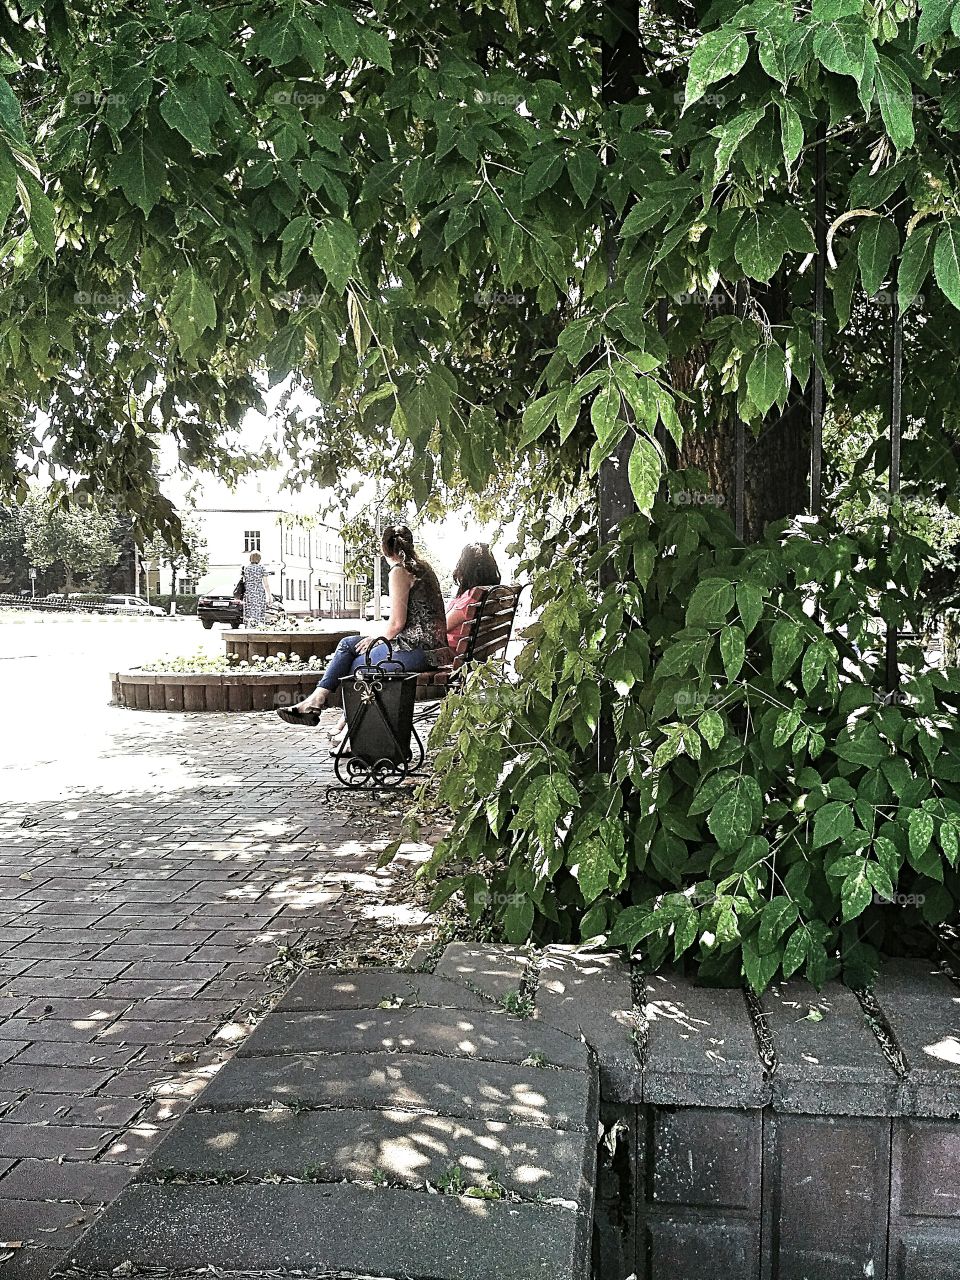 летний день в городе, жарко, подруги сидят на скамейке в тени деревьев. вымощенный плиткой тротуар, рядом шоссе